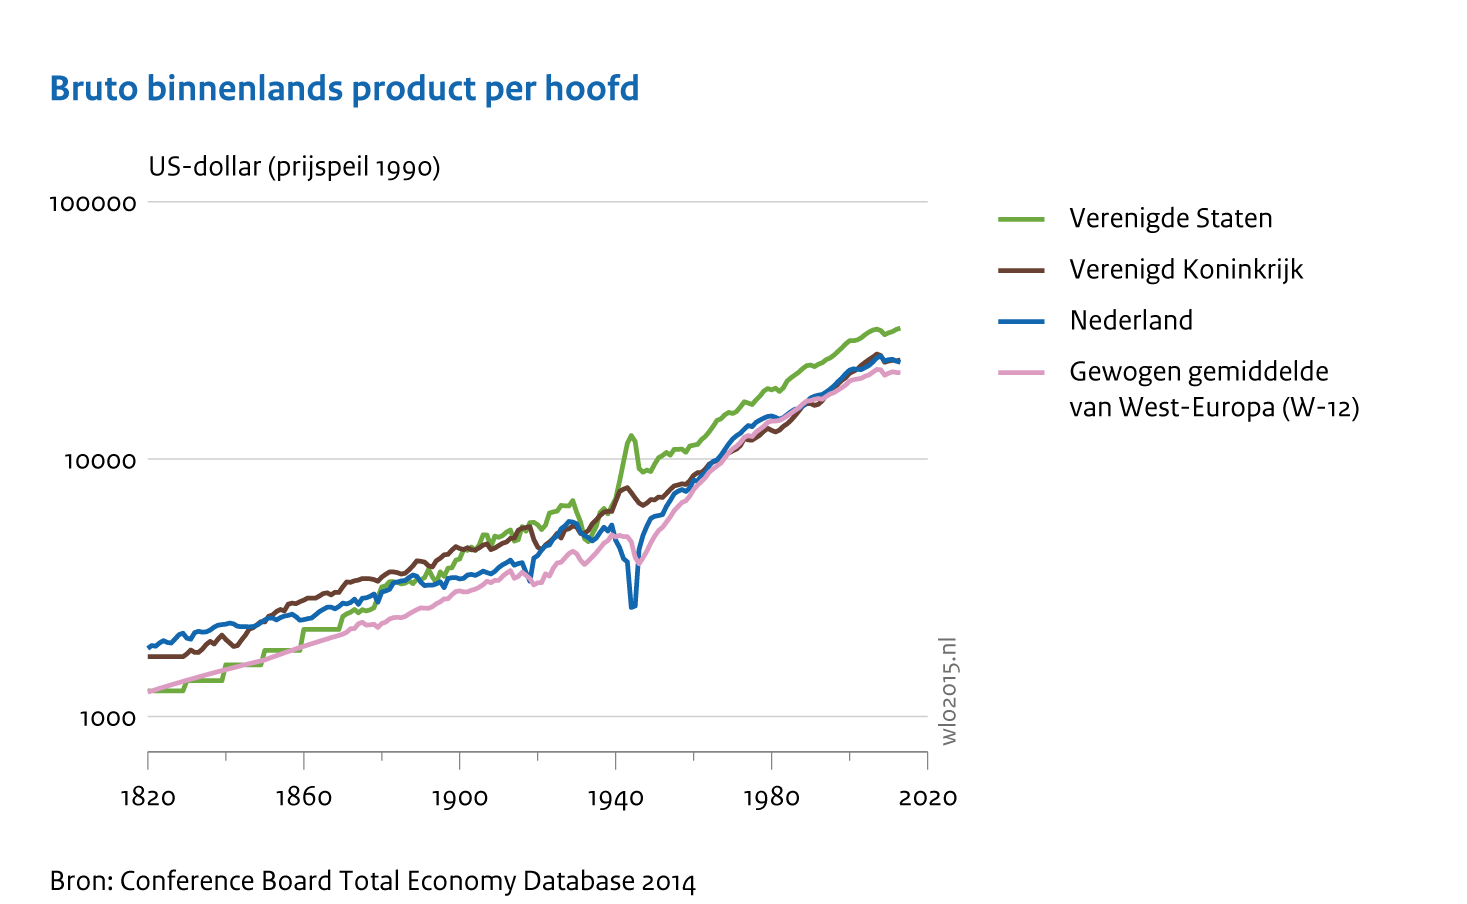 Ontwikkeling van het bruto binnenlands product per hoofd in USD vanaf 1820 tot 2020. In de grafiek wordt het bbp van Nederland afgezet tegen de Verenigde Staten, Verenigd Koninkrijk en het gewogen gemiddelde van West-Europa. De gafiek toton voor alle vier vrijwel dezelfde stijgende lijn.   